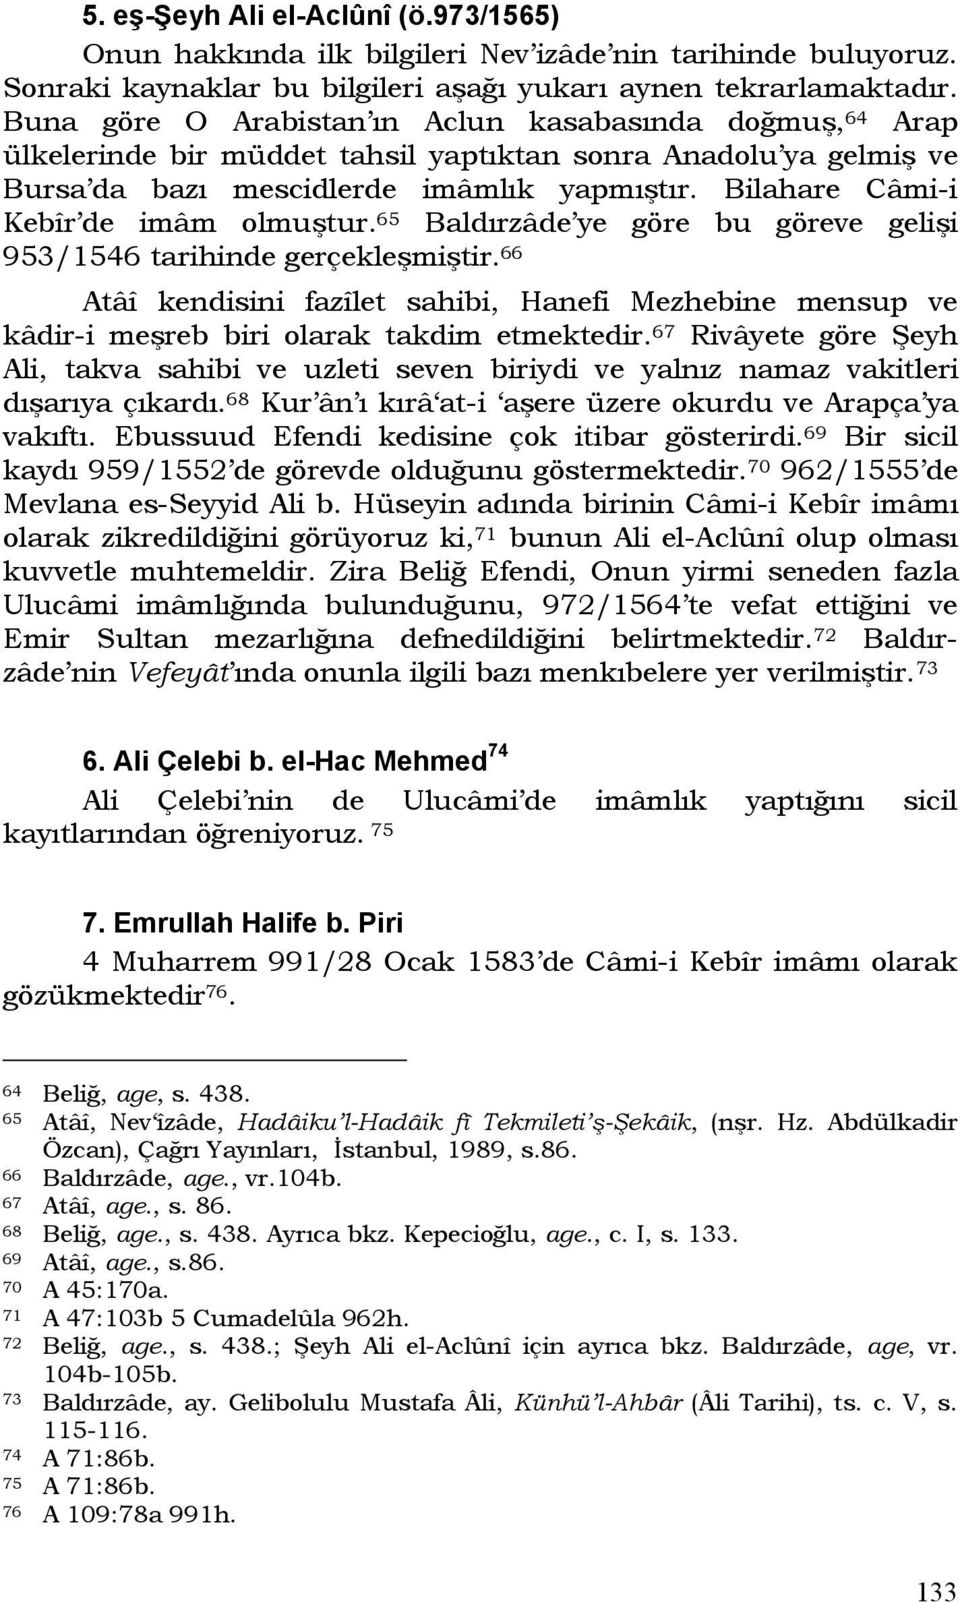 Bilahare Câmi-i Kebîr de imâm olmuştur. 65 Baldırzâde ye göre bu göreve gelişi 953/1546 tarihinde gerçekleşmiştir.